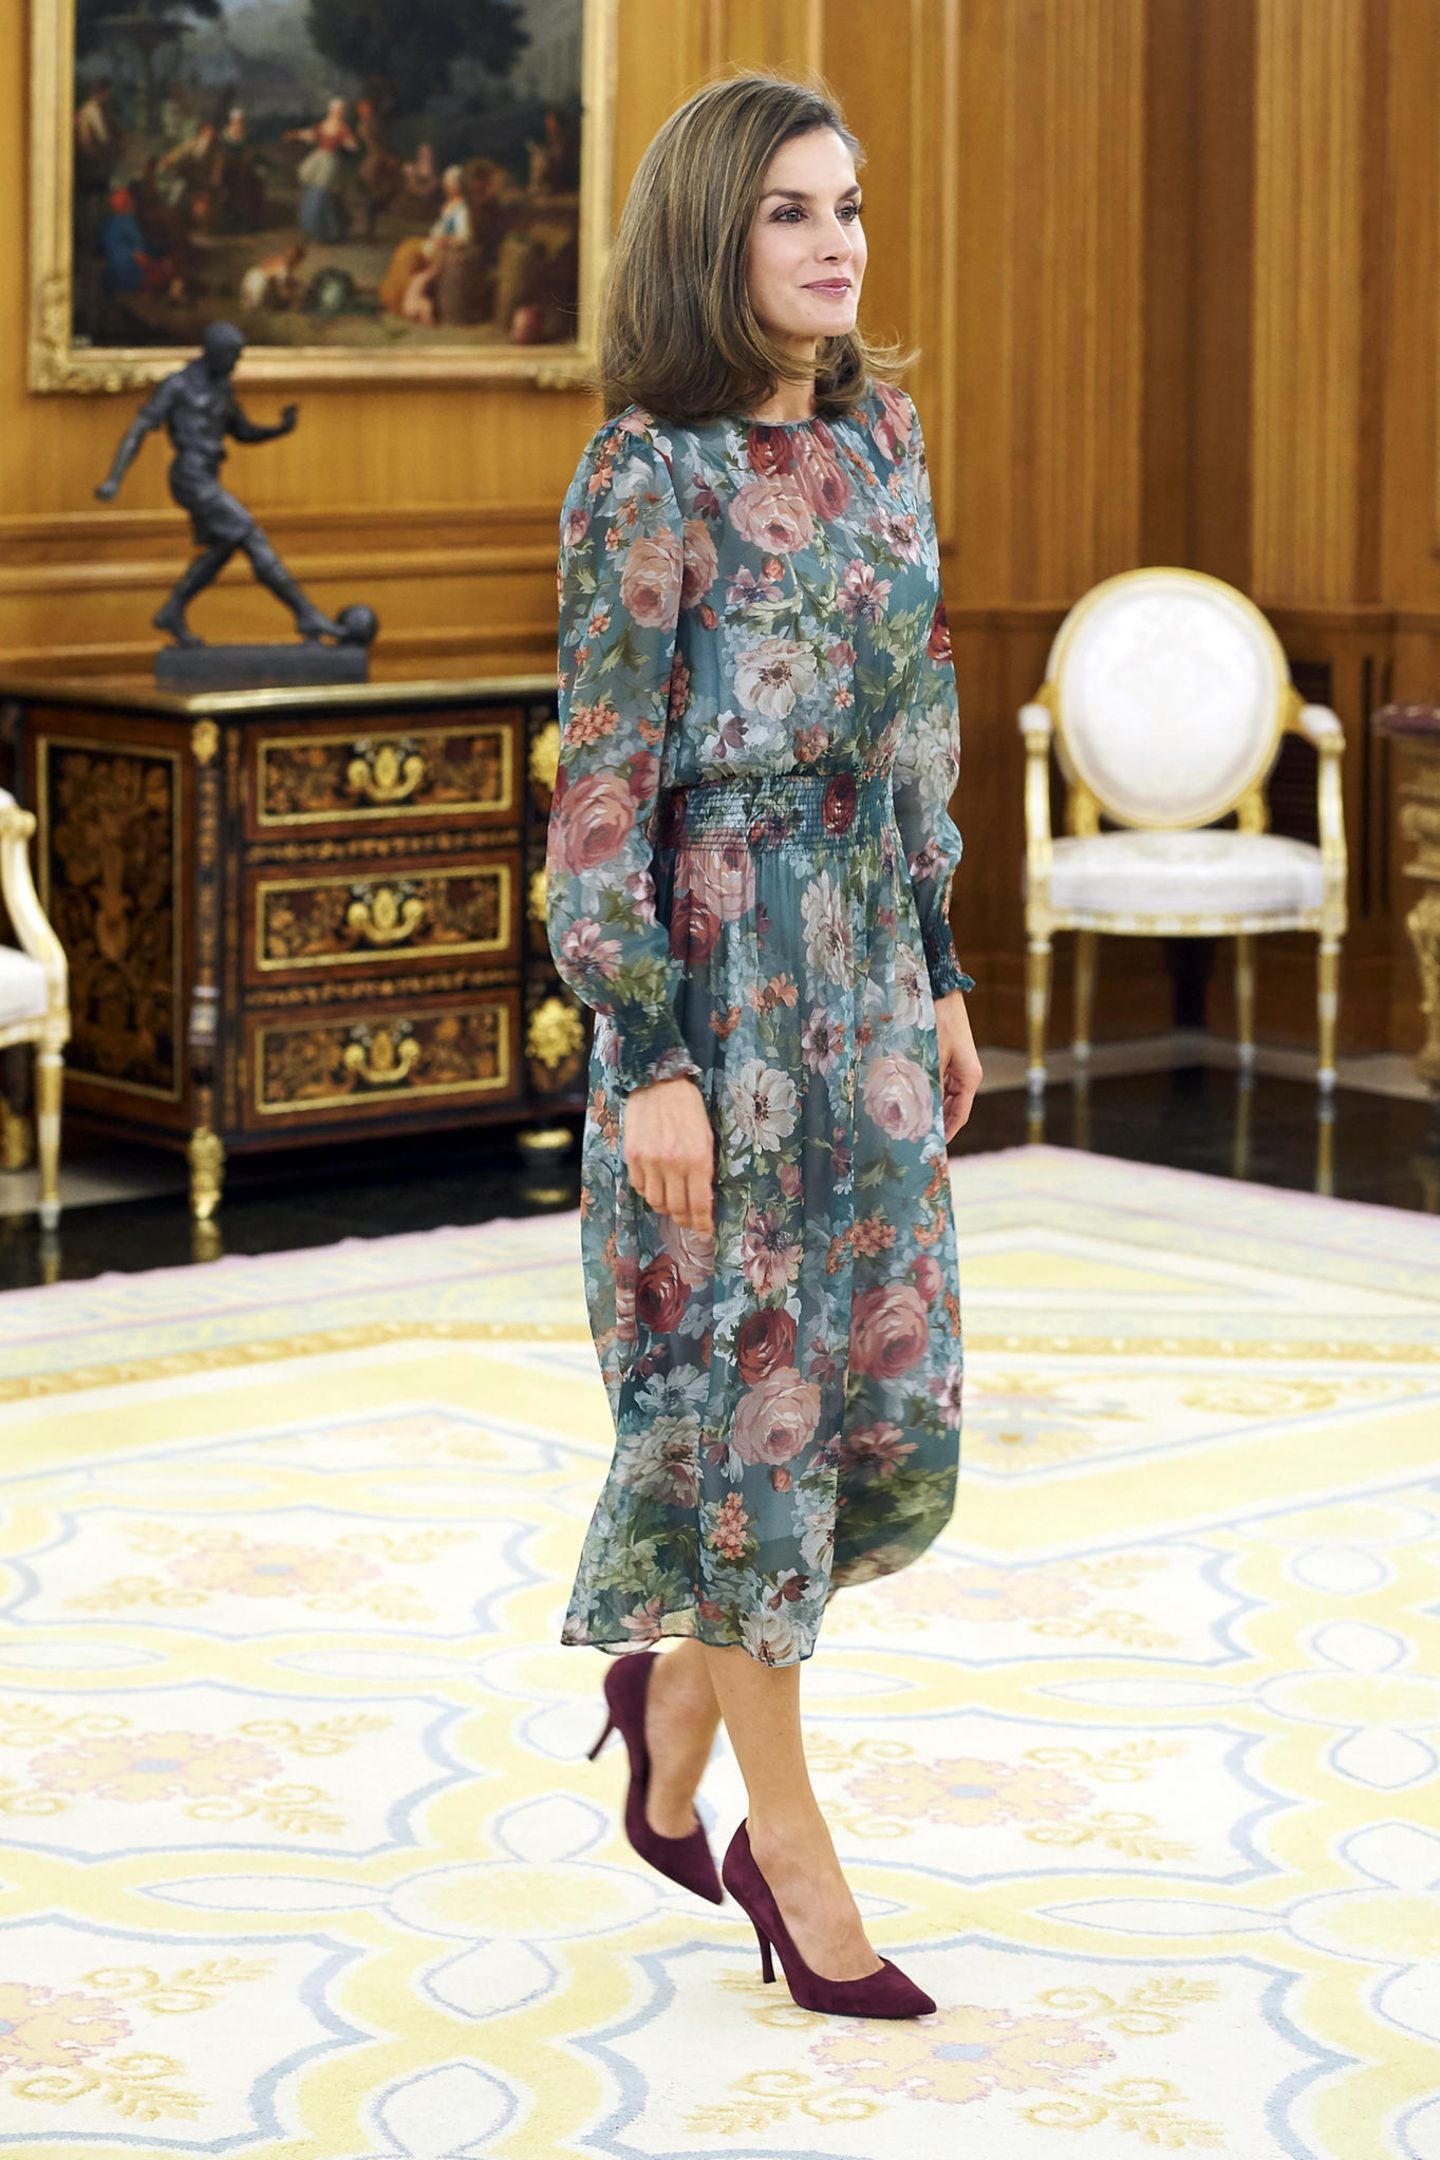 Royaler Auftritt zum Schnäppchenpreis: Königin Letizia bezaubert in einem floralen Traumkleid von Zara für günstige 59,95 Euro. 